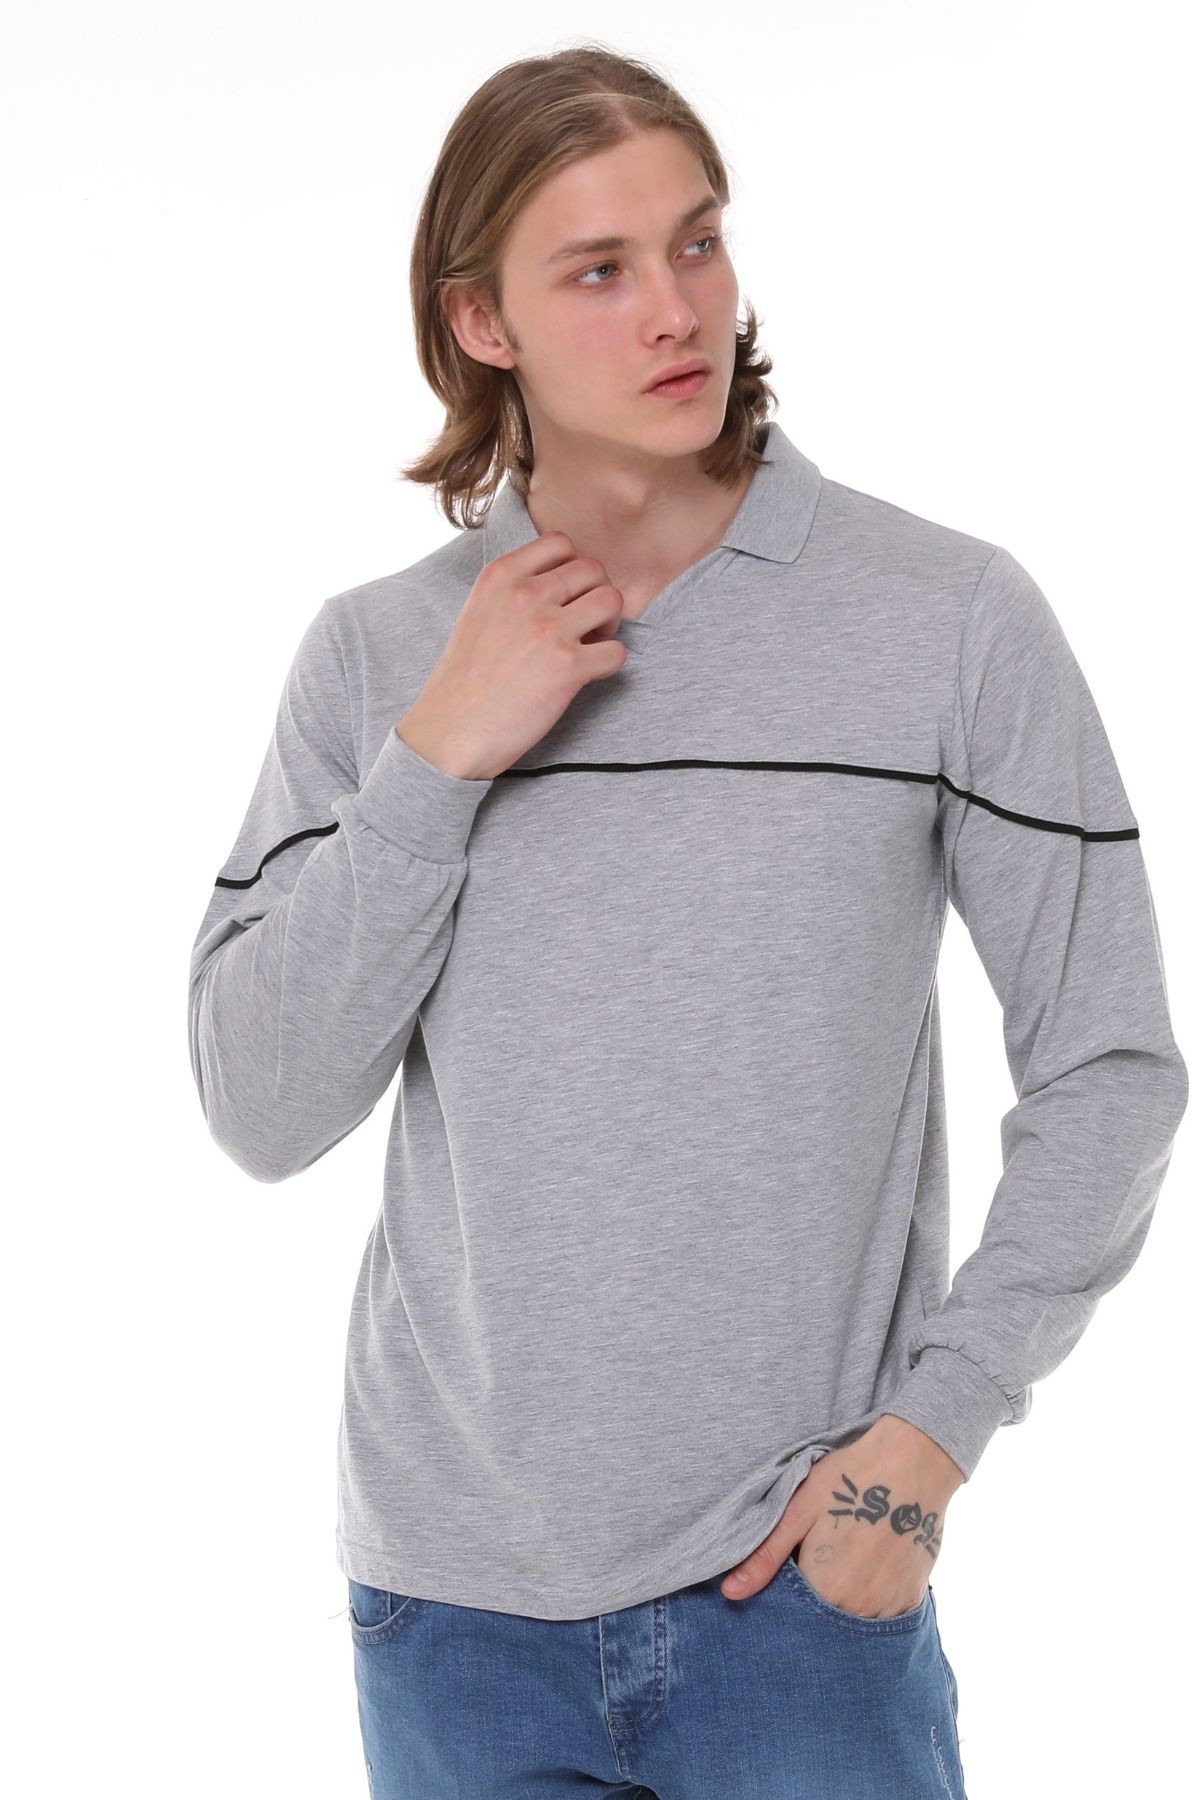 Uniprom Uzun Kollu T- Shirt Penye Polo Yaka %100 Pamuk Gri Melanj Erkek